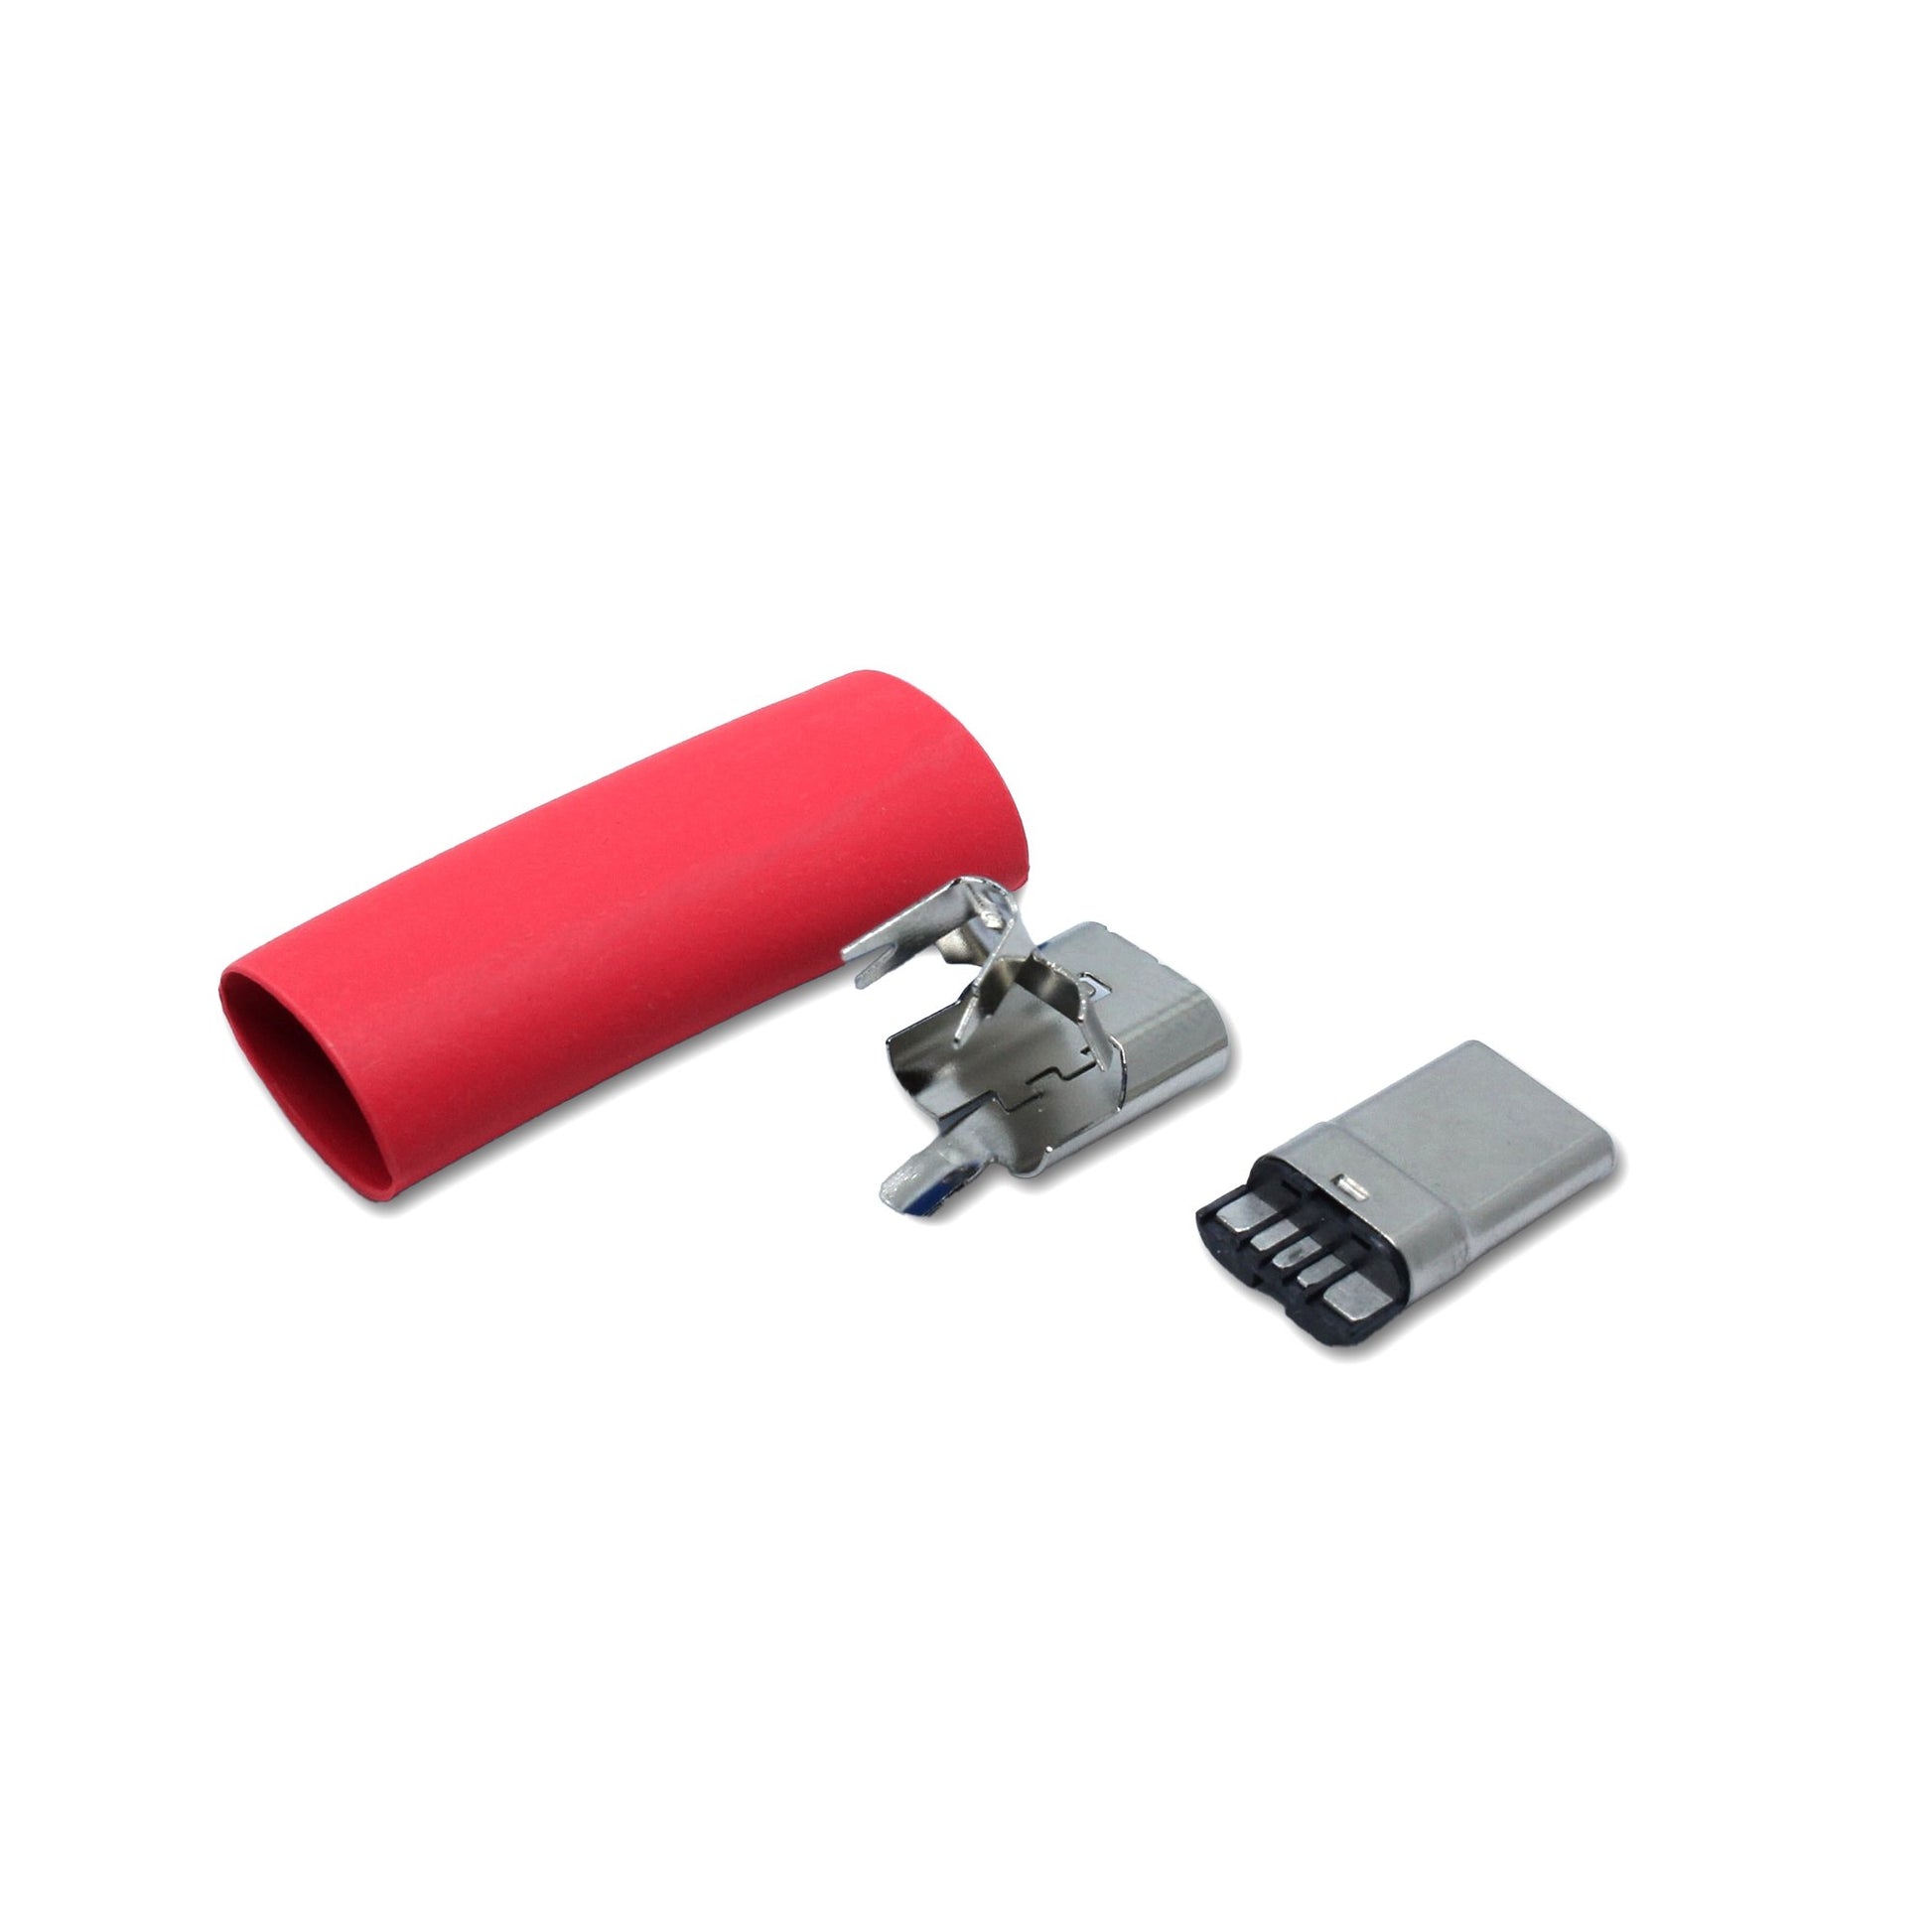 Einzelteile USB C Stecker in rot, Ersatzteil für ein USB 2.0 Kabel